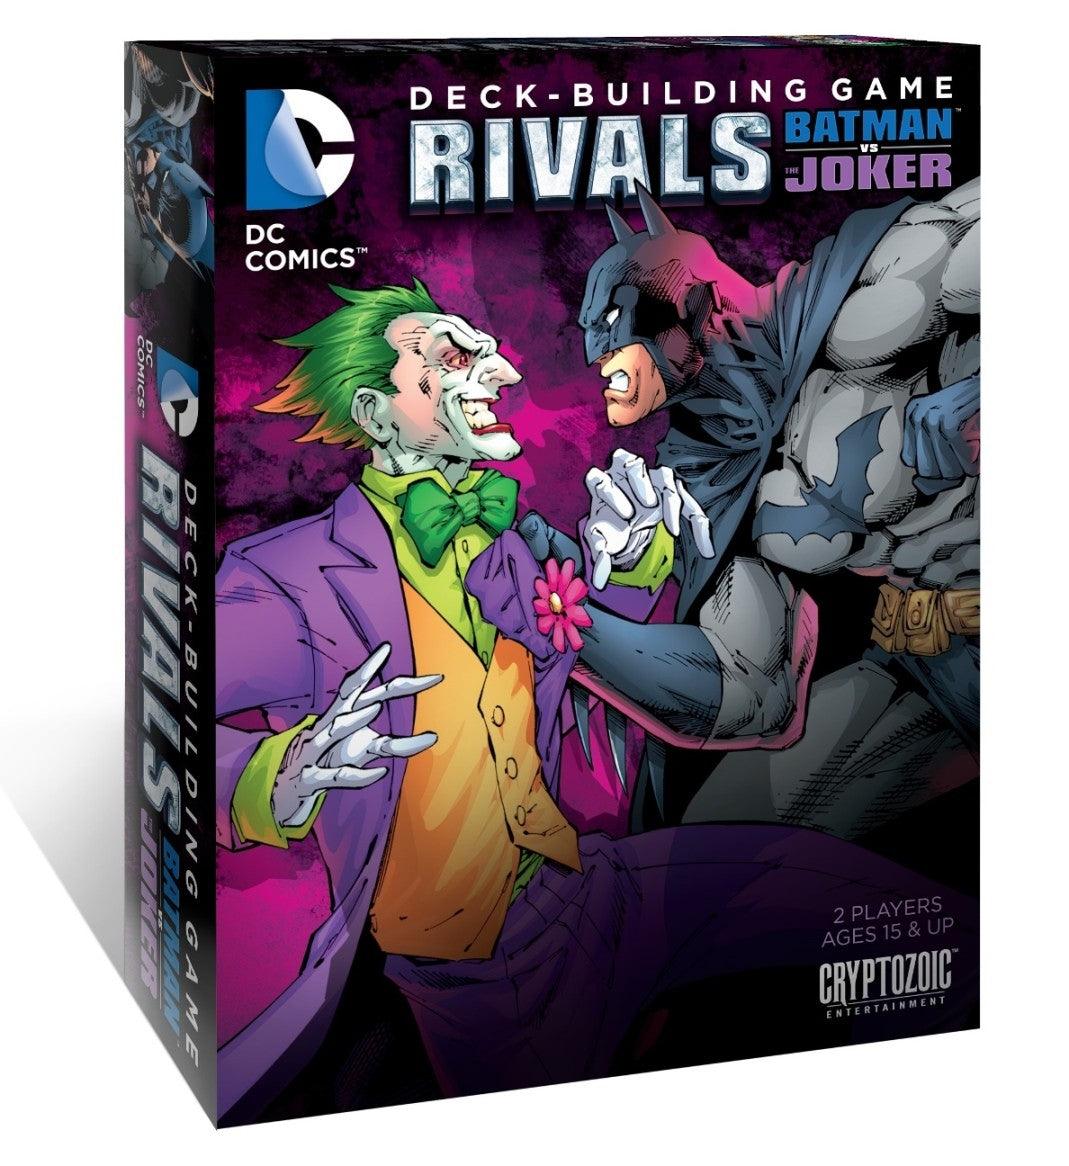 DC Comics: Deck-Building Game - Rivals: Batman vs. Joker - Amuzzi